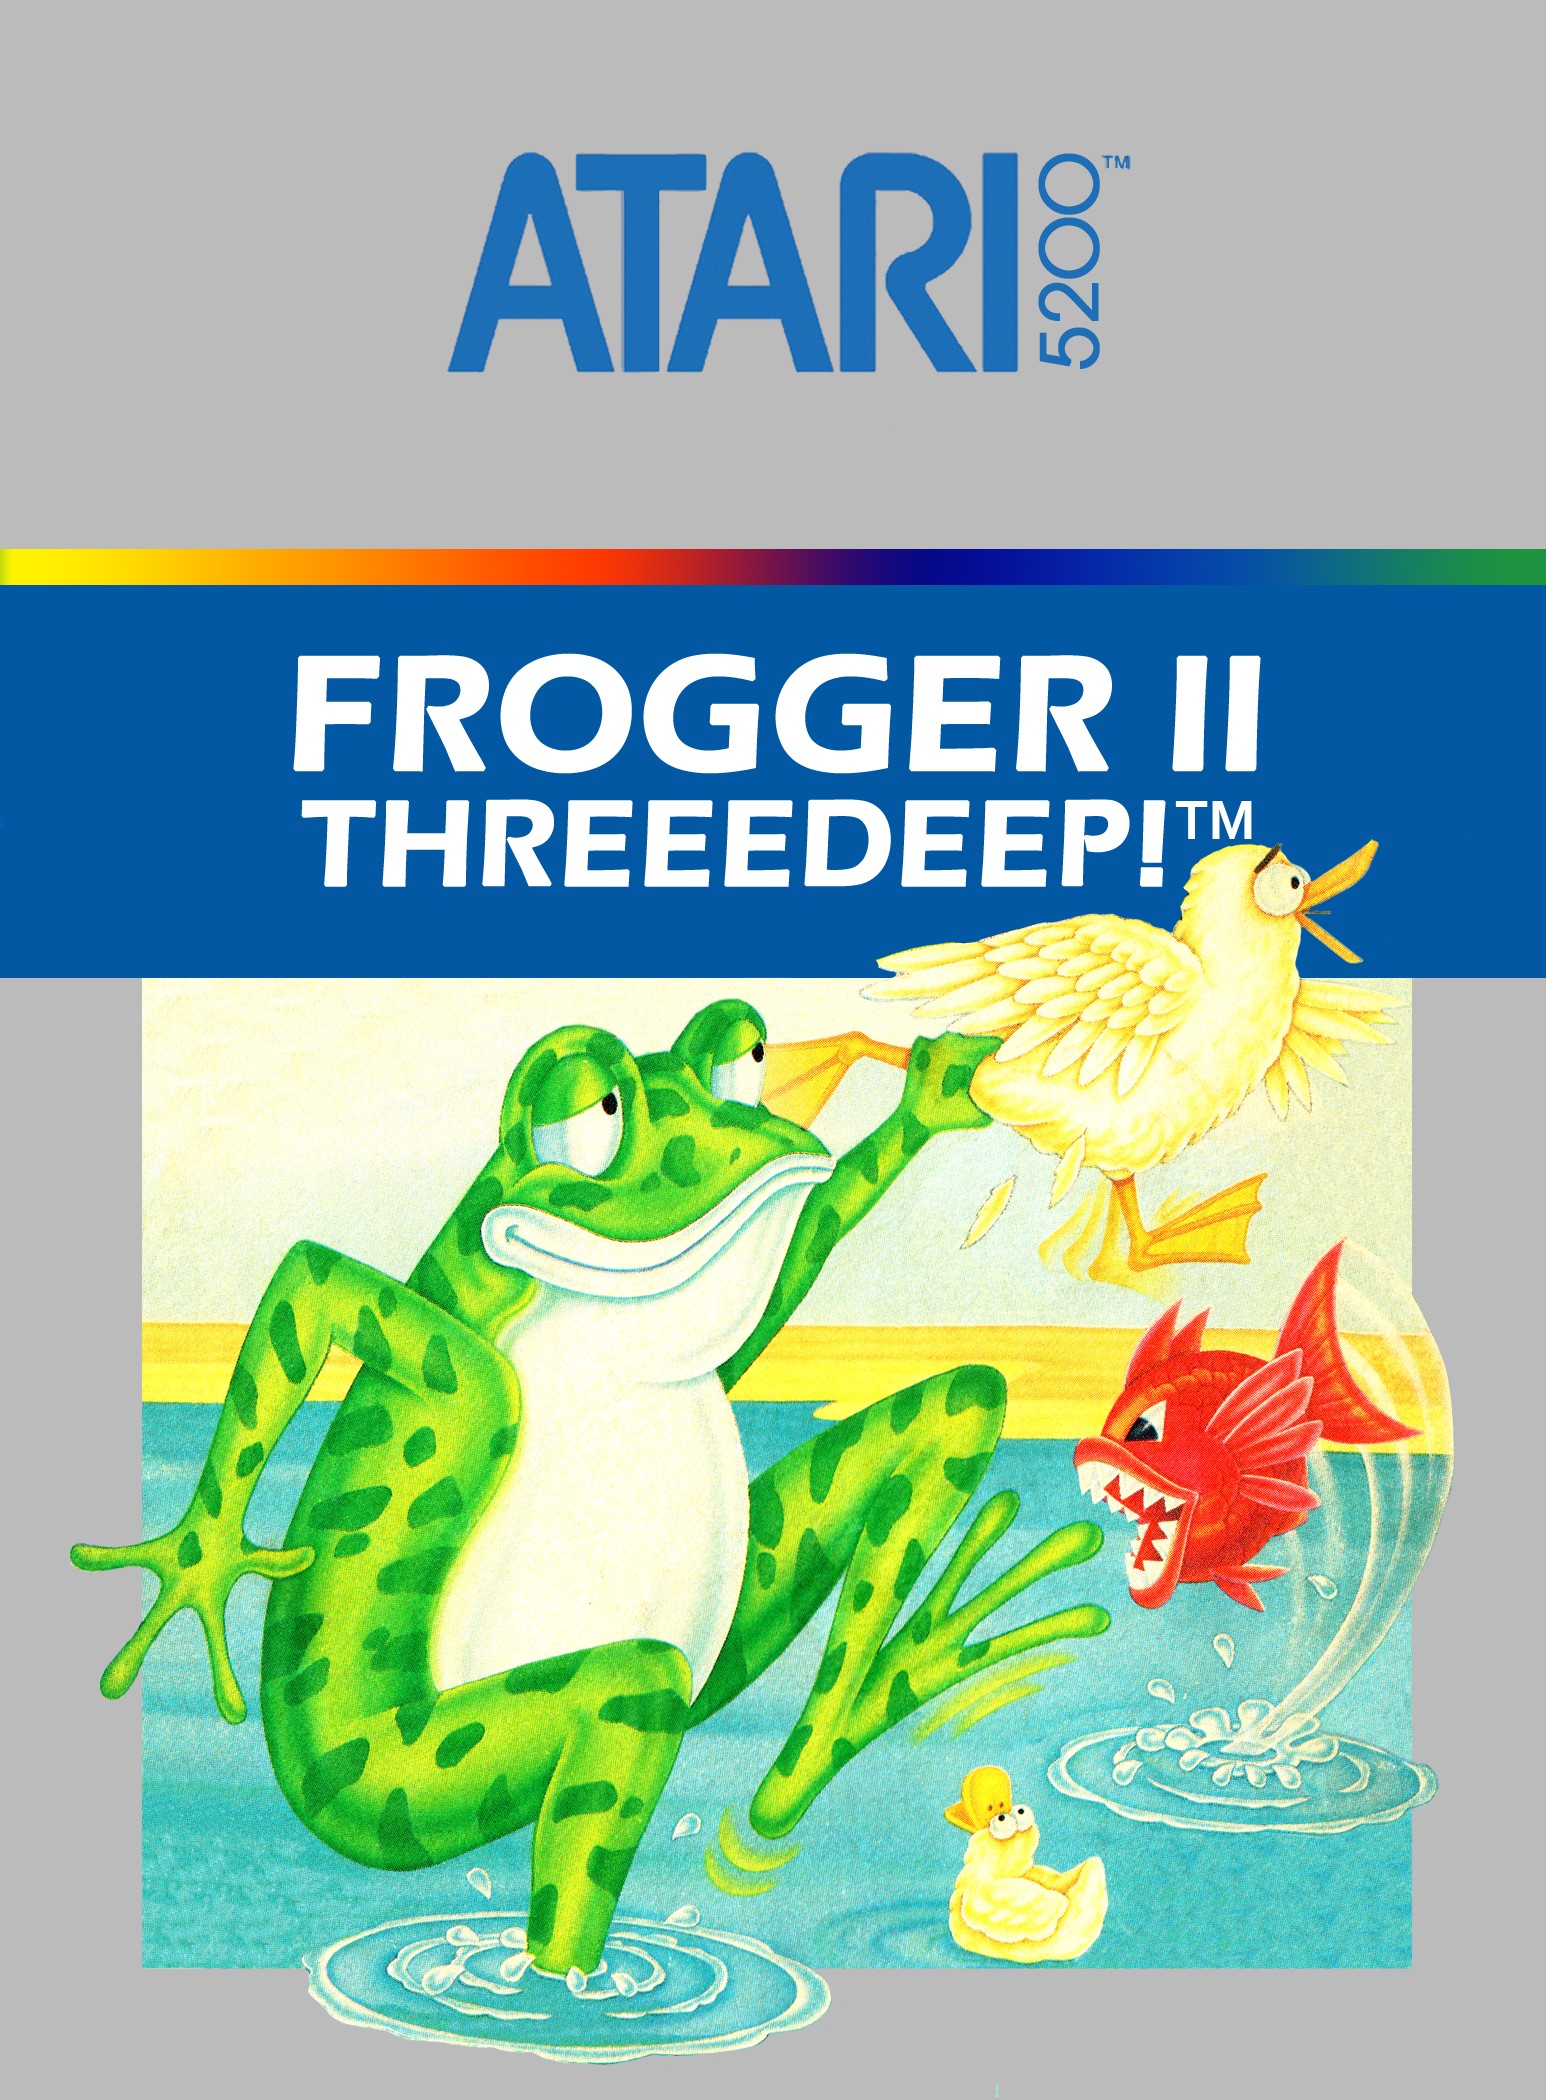 'Frogger II Threeedeep!'